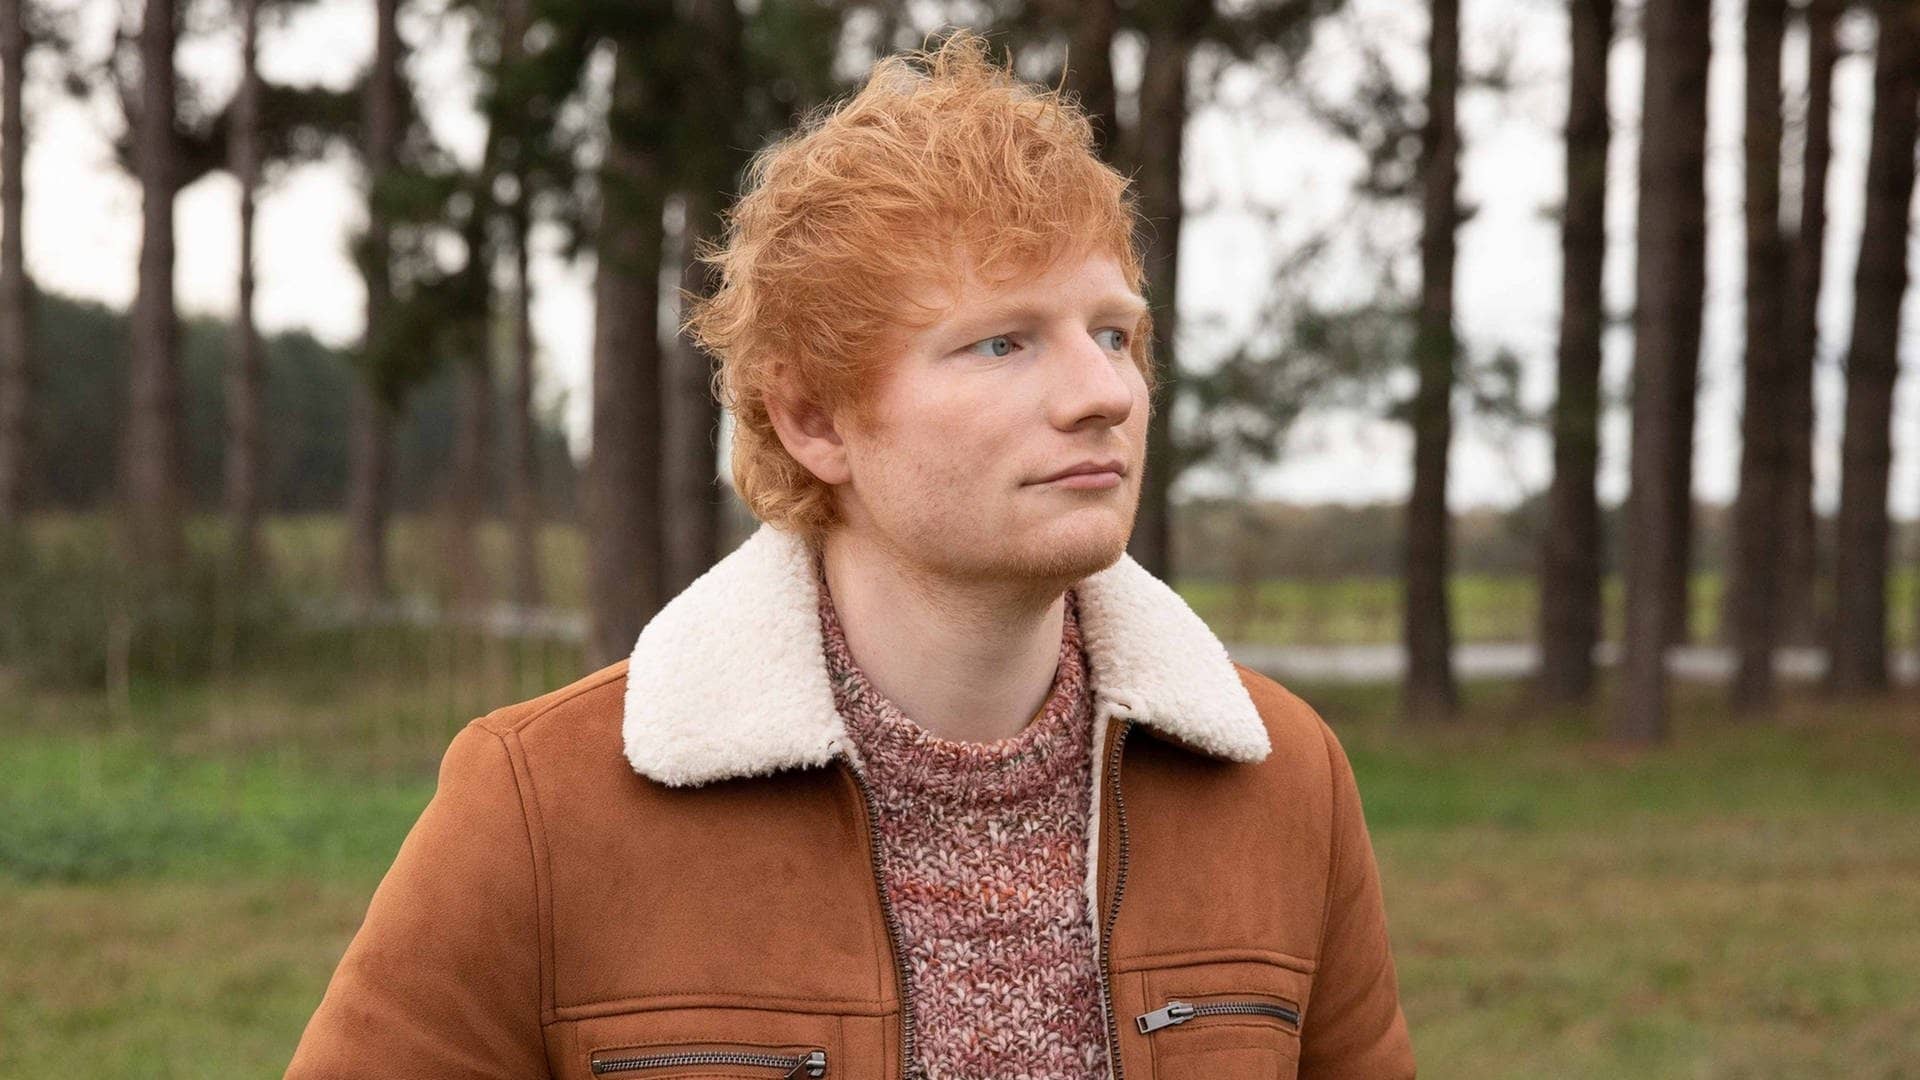 Der Sänger Ed Sheeran trägt eine braune Jacke und steht vor mehreren Bämen, er hat gerade die Doku „The Sum Of It All“ veröffentlicht (Foto: Mark Surridge)